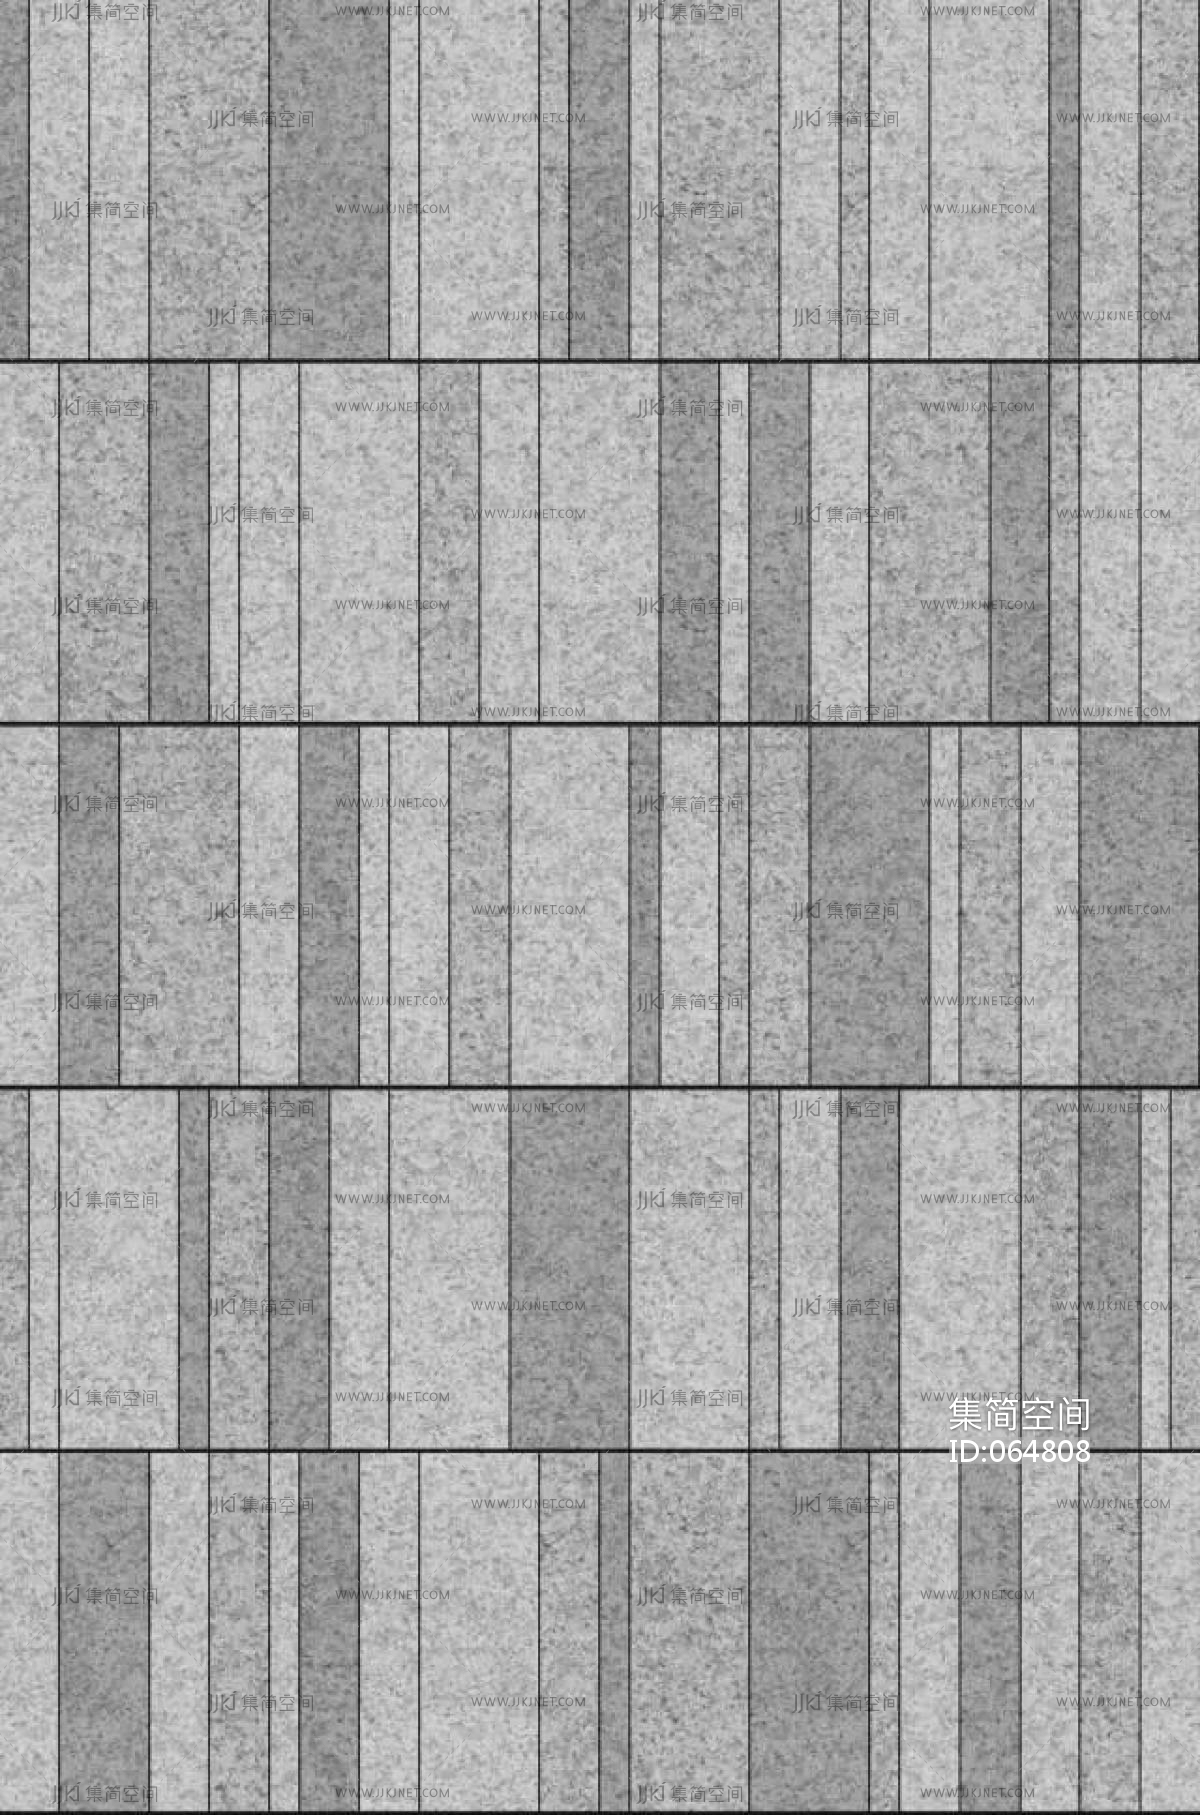 室外广场砖地砖铺装地面 (11)材质贴图下载-【集简空间】「每日更新」 7ED